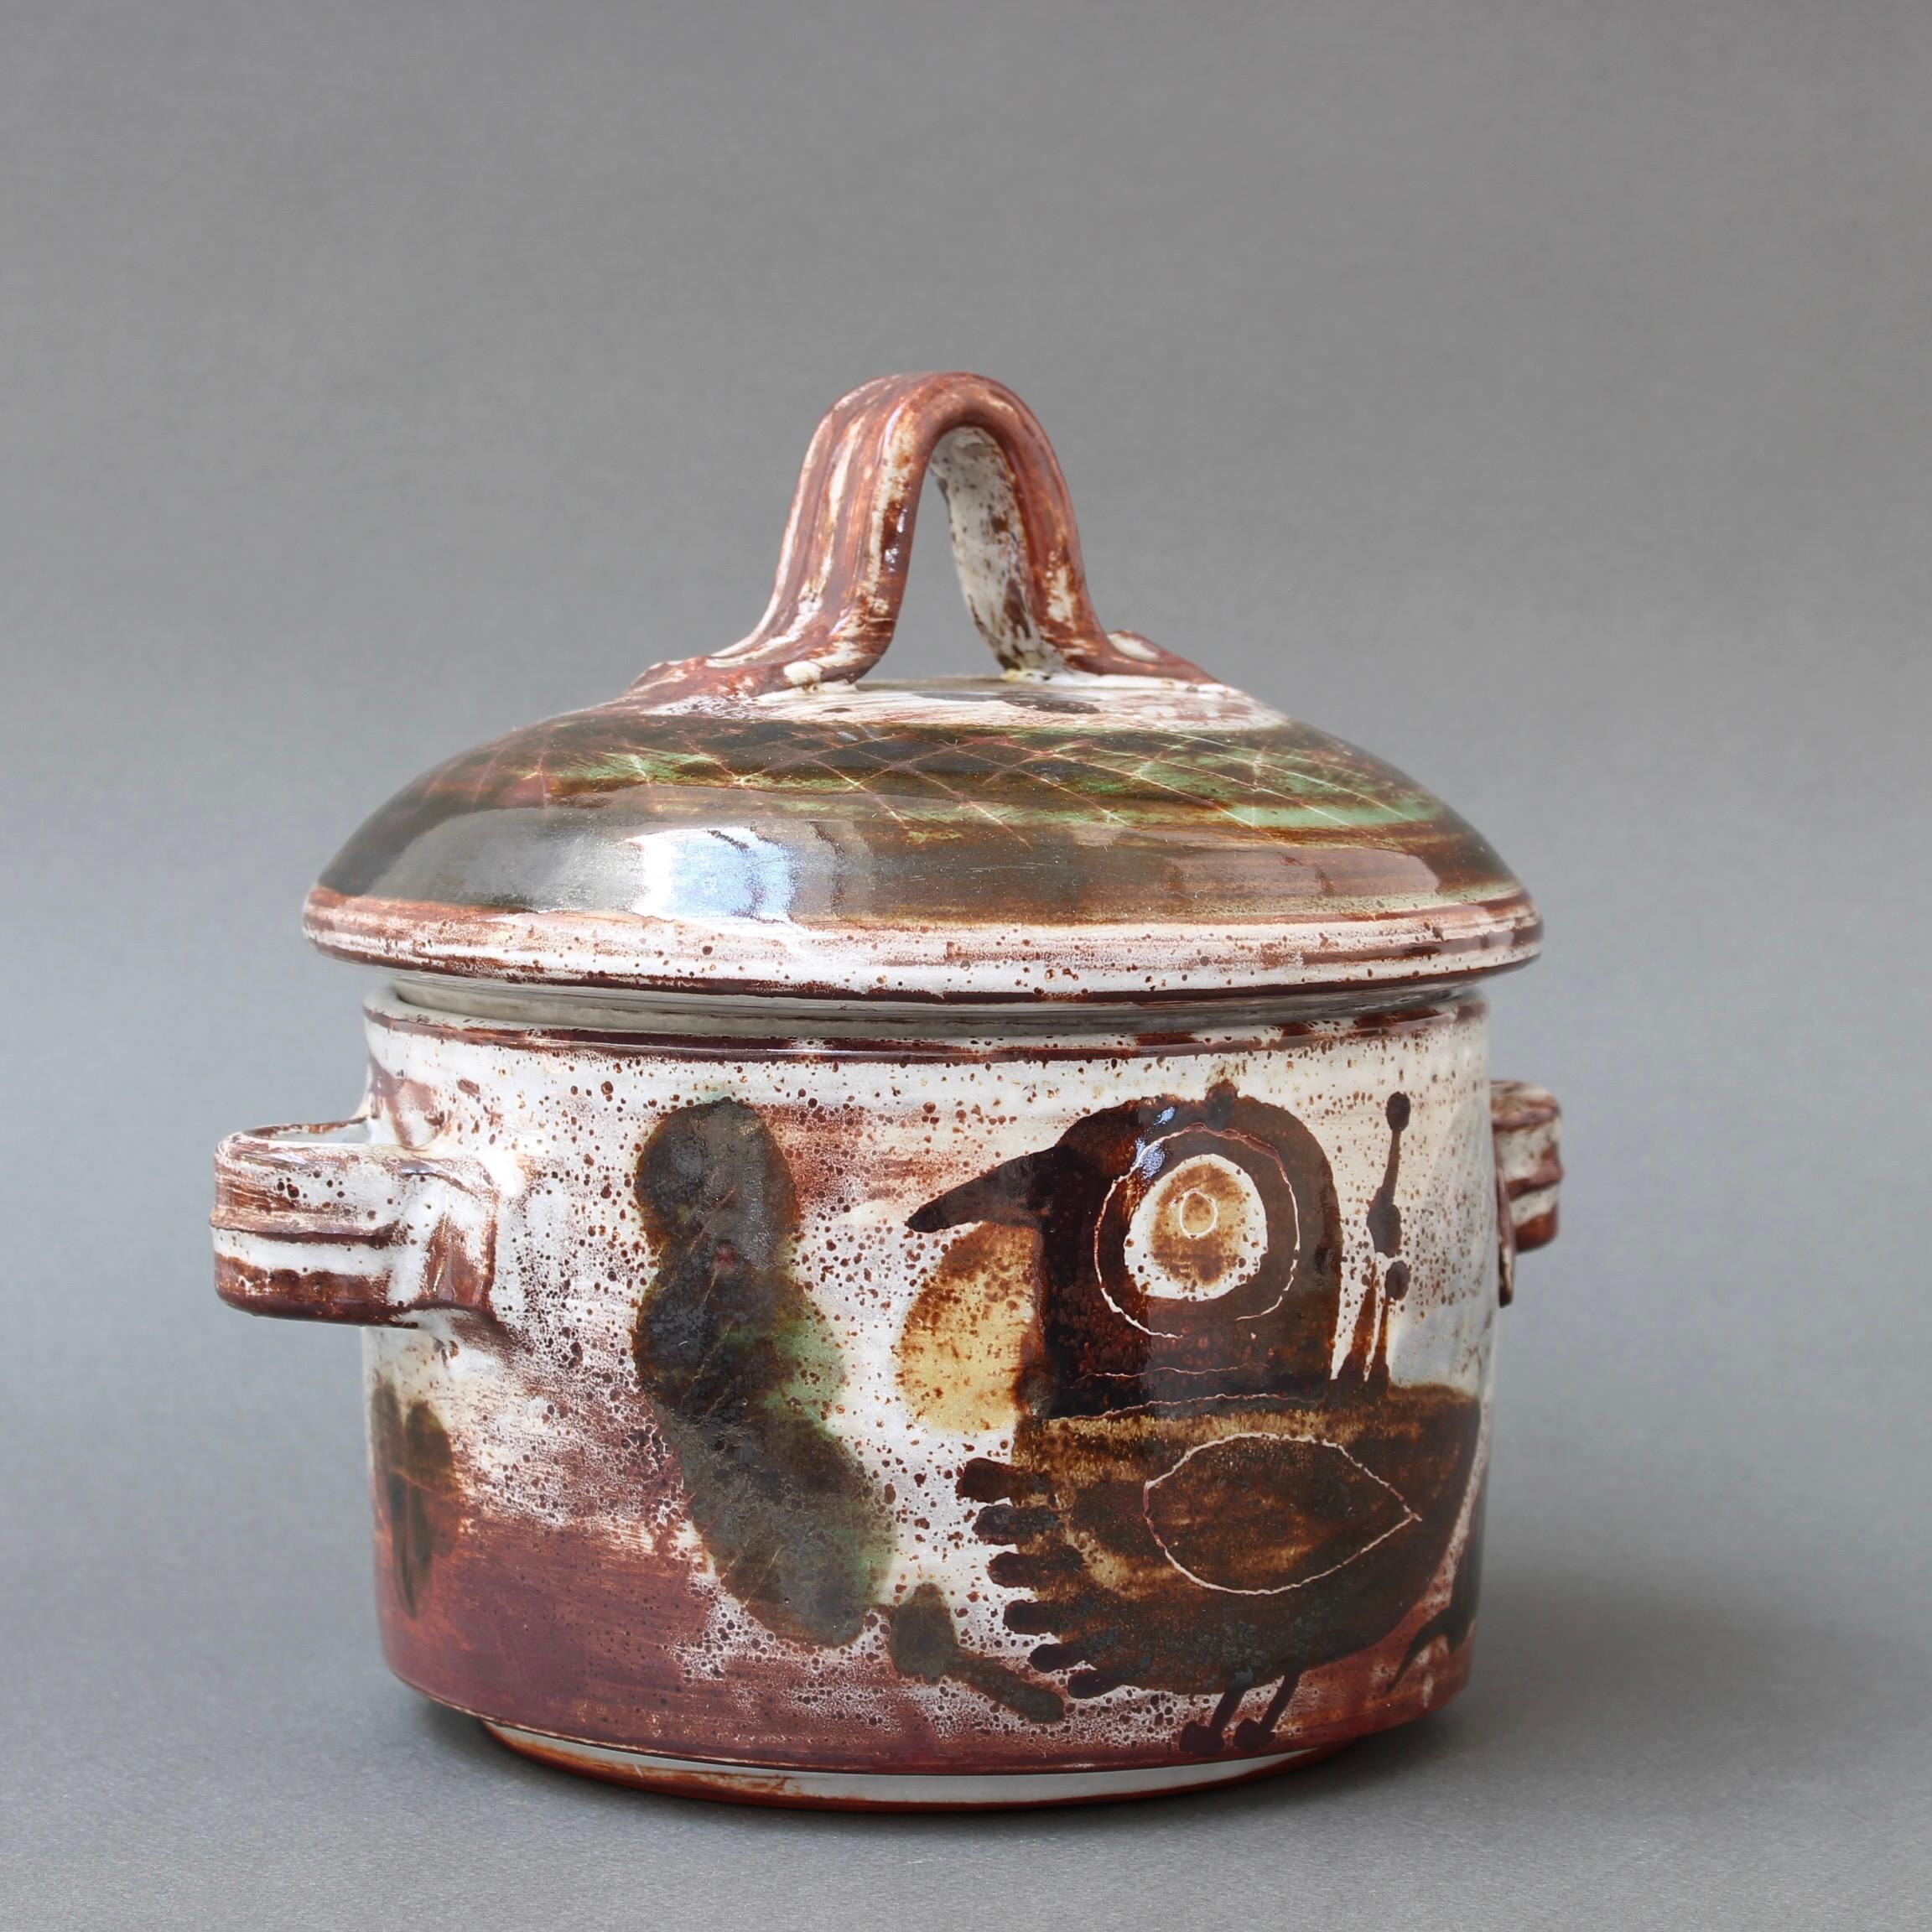 Pot décoratif vintage en céramique avec couvercle de Michel Barbier (circa 1960). Ce pot utilitaire avec couvercle est également une œuvre d'art étonnante. L'extérieur brillant est orné d'un oiseau stylisé et de motifs végétaux encadrés dans les